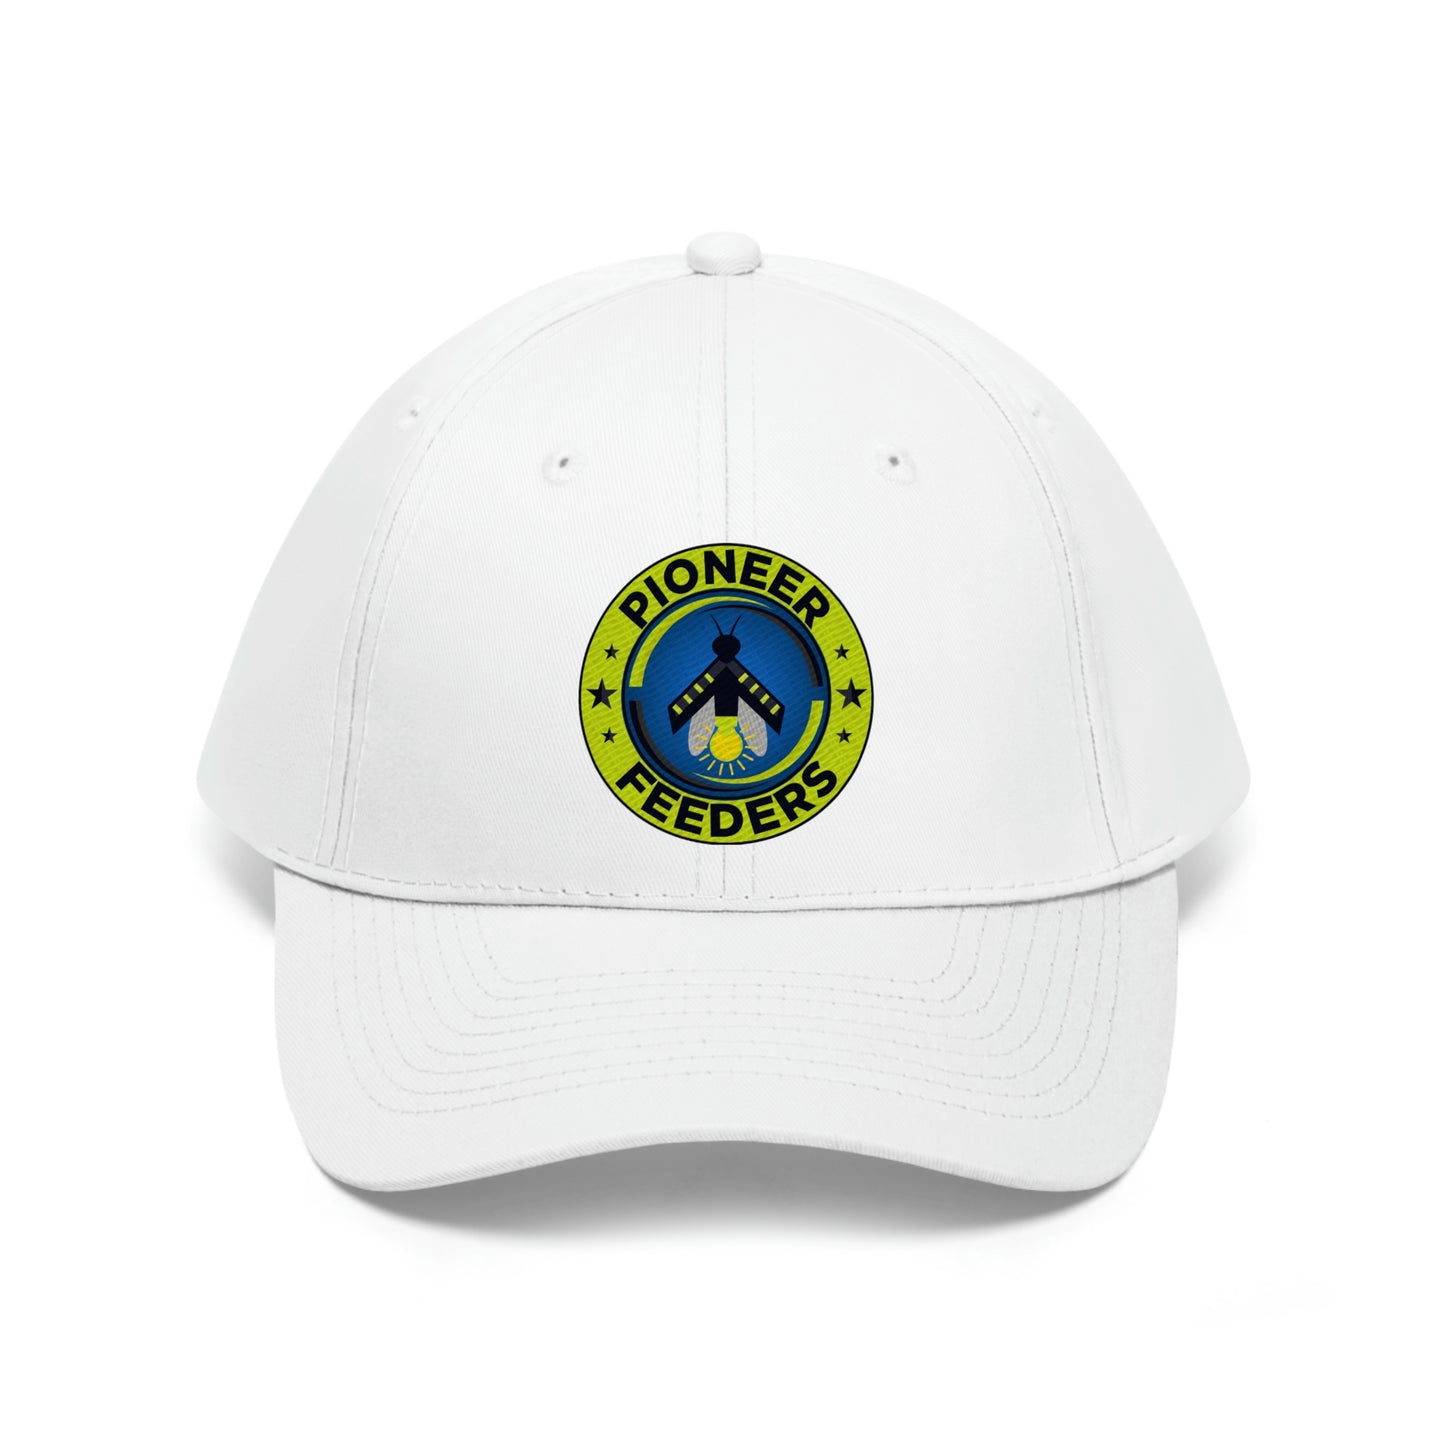 Unisex Pioneer Feeders Hat